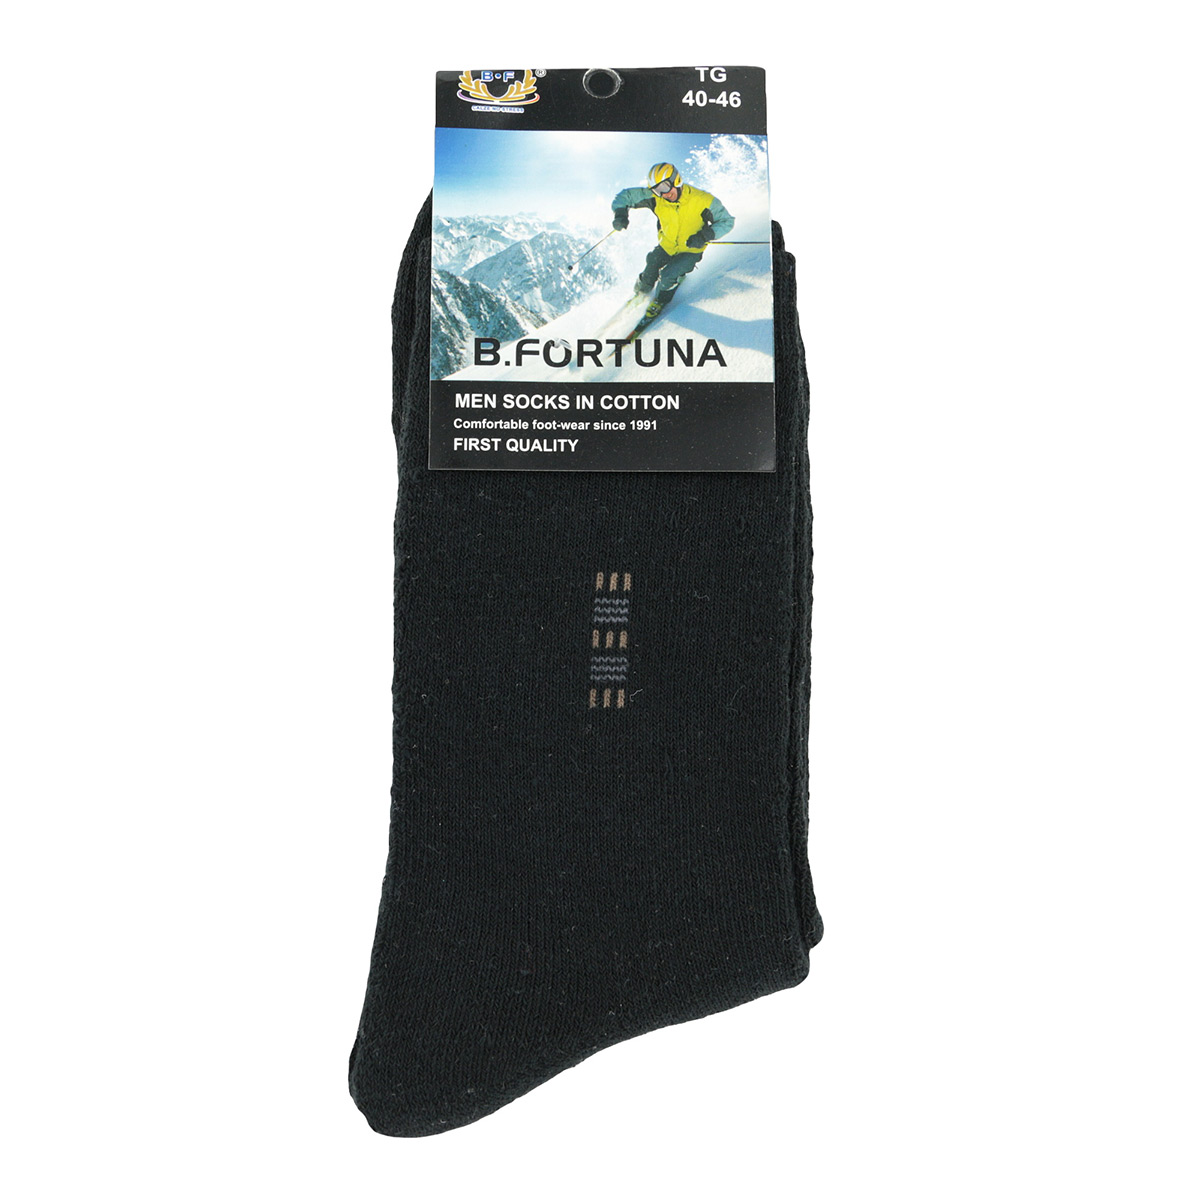 B.Fortuna Socks